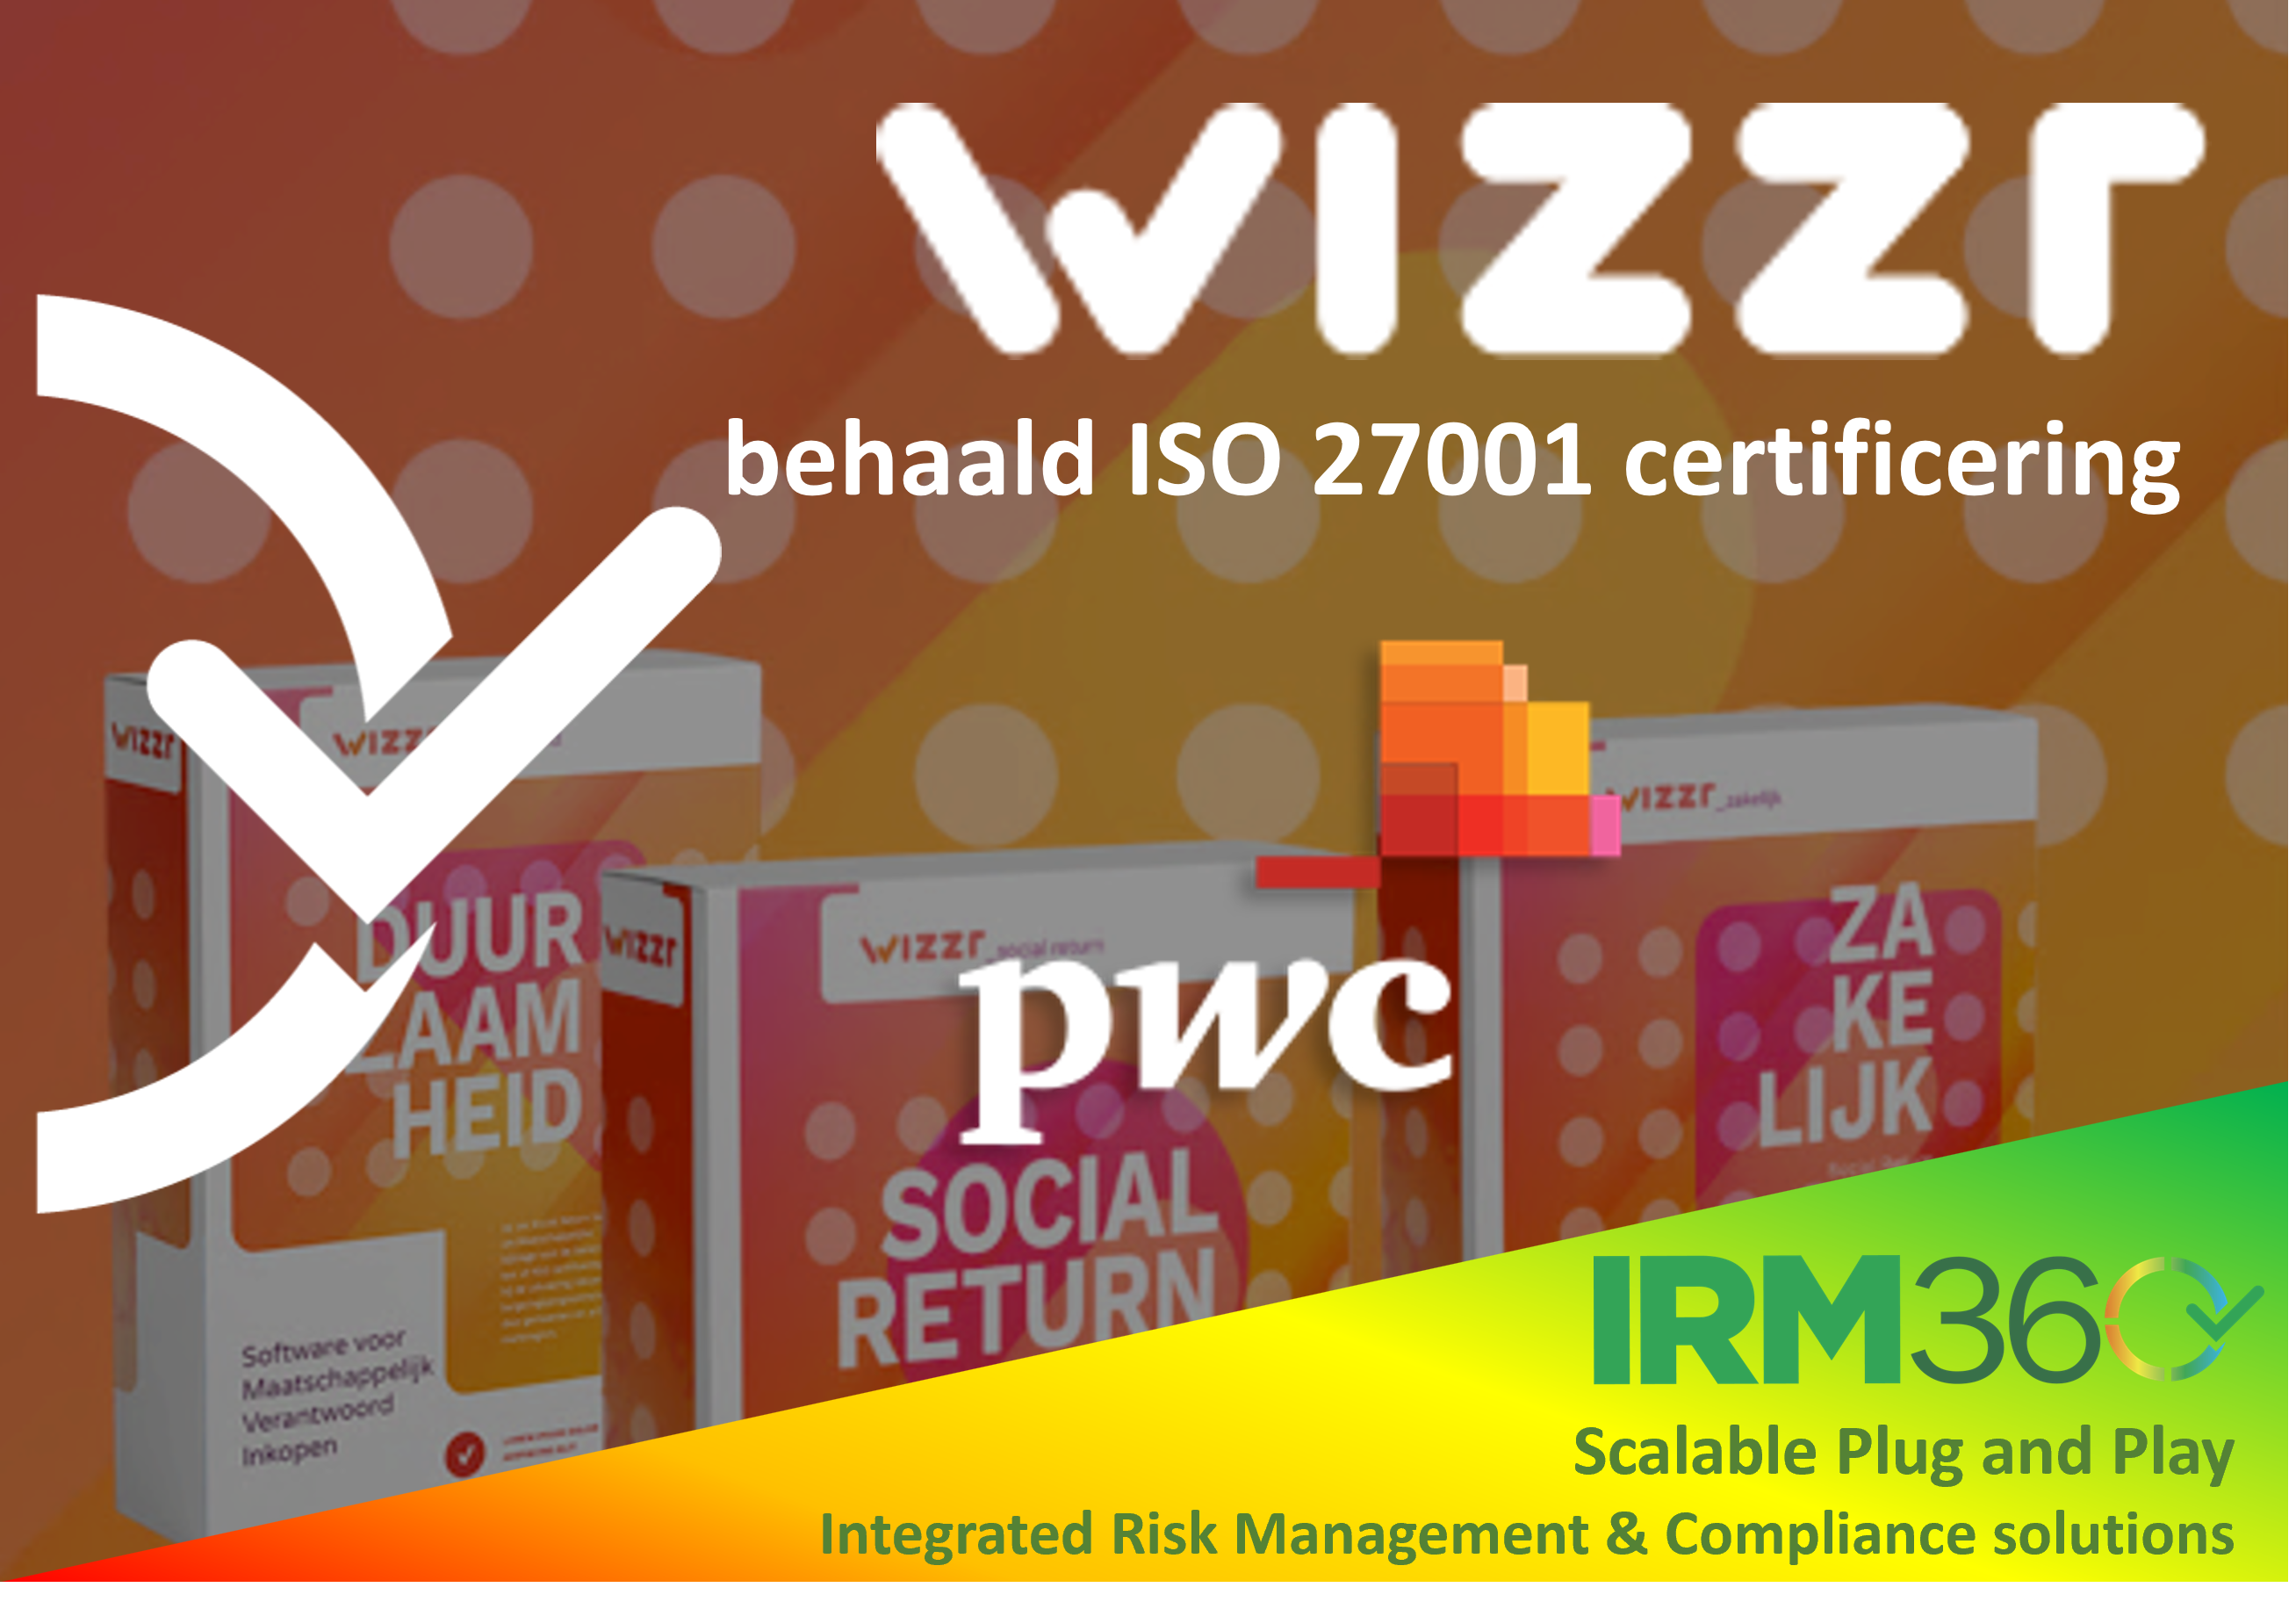 Wizzr obtiene la certificación ISO 27001